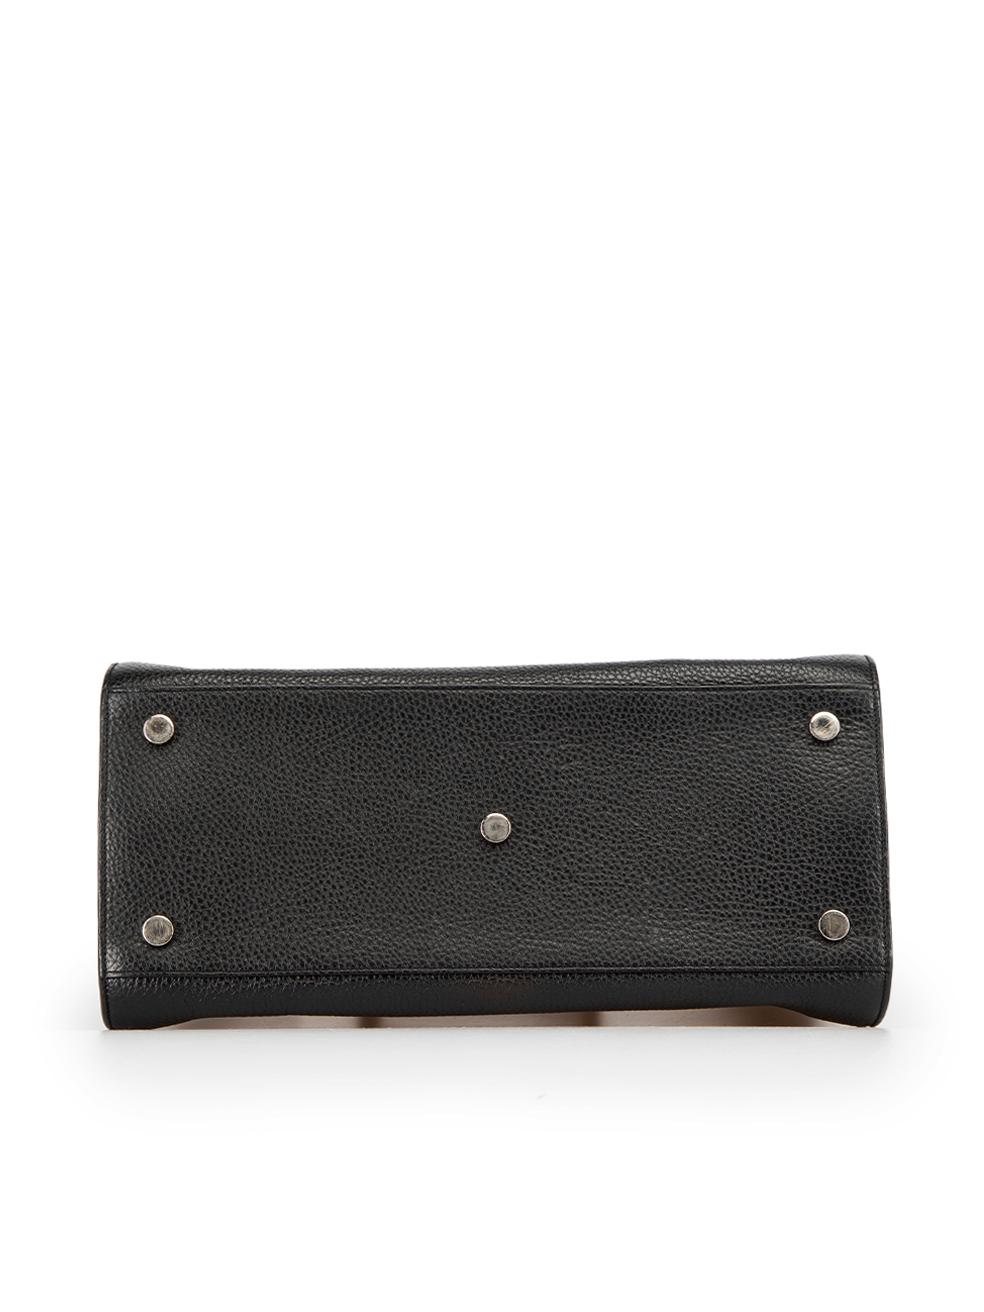 Saint Laurent Women's Black Grained Leather Sac de Jour Handbag 1